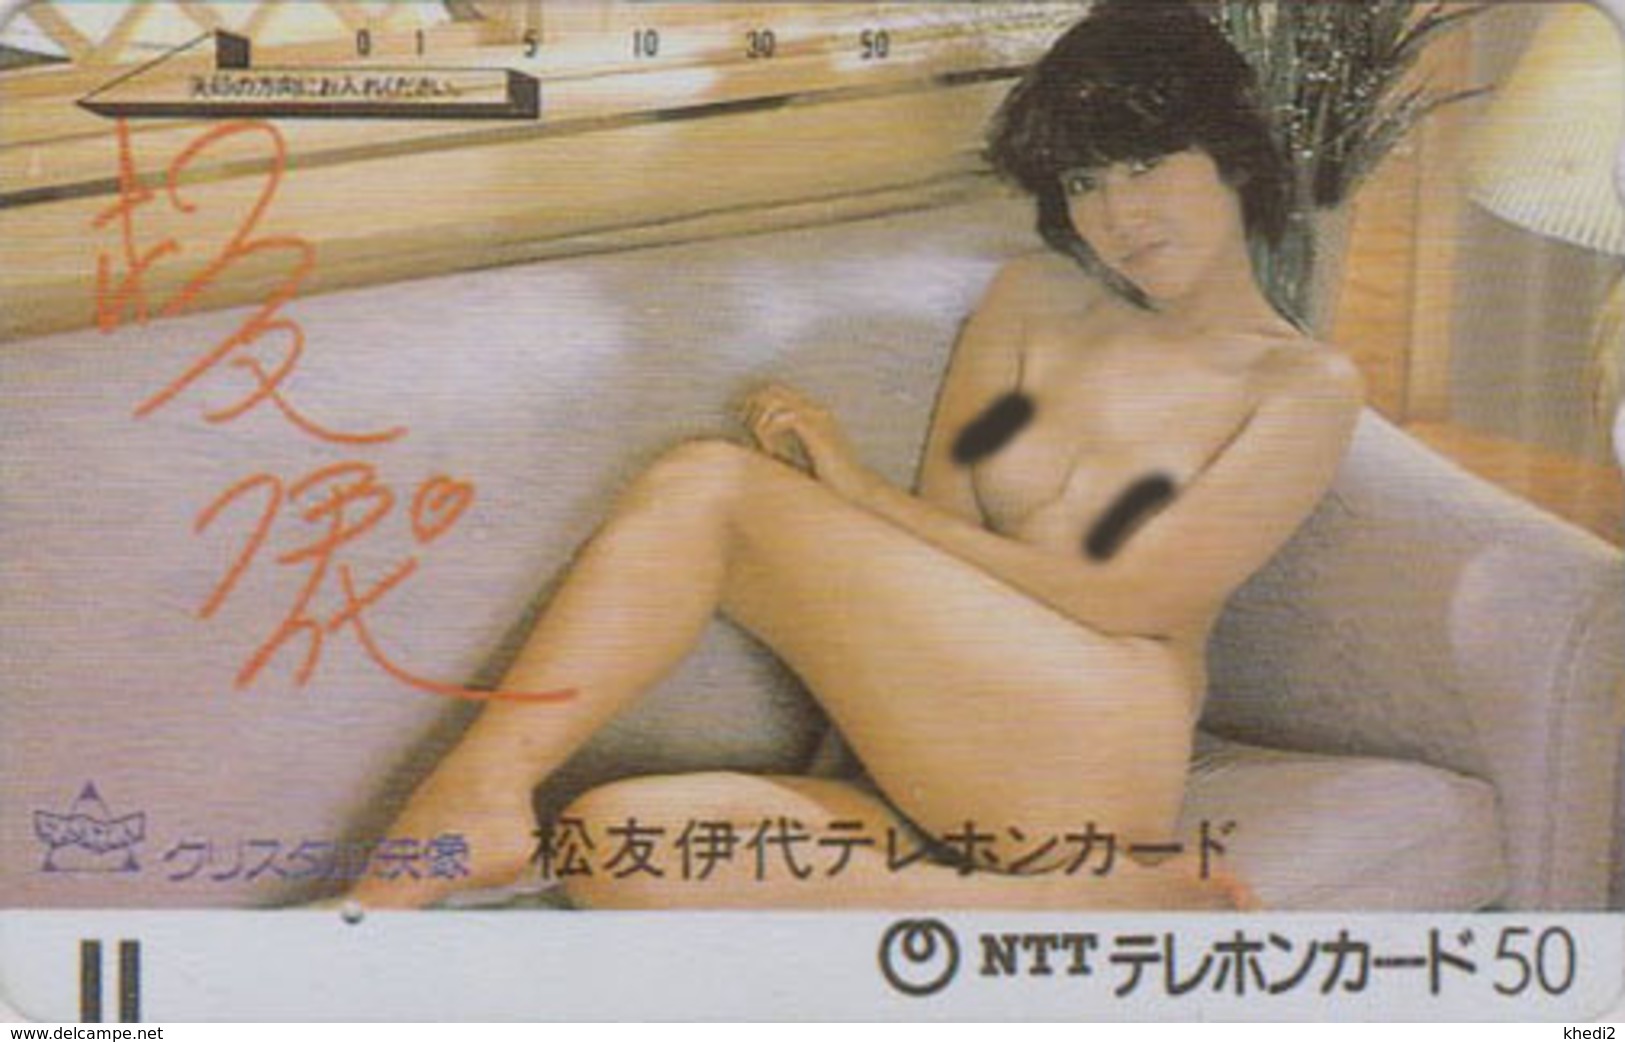 Télécarte Ancienne Japon RECTO VERSO - EROTIQUE - FEMME NUE  EROTIC NUDE WOMAN GIRL Japan Front Bar Phonecard - 6152 - Japon